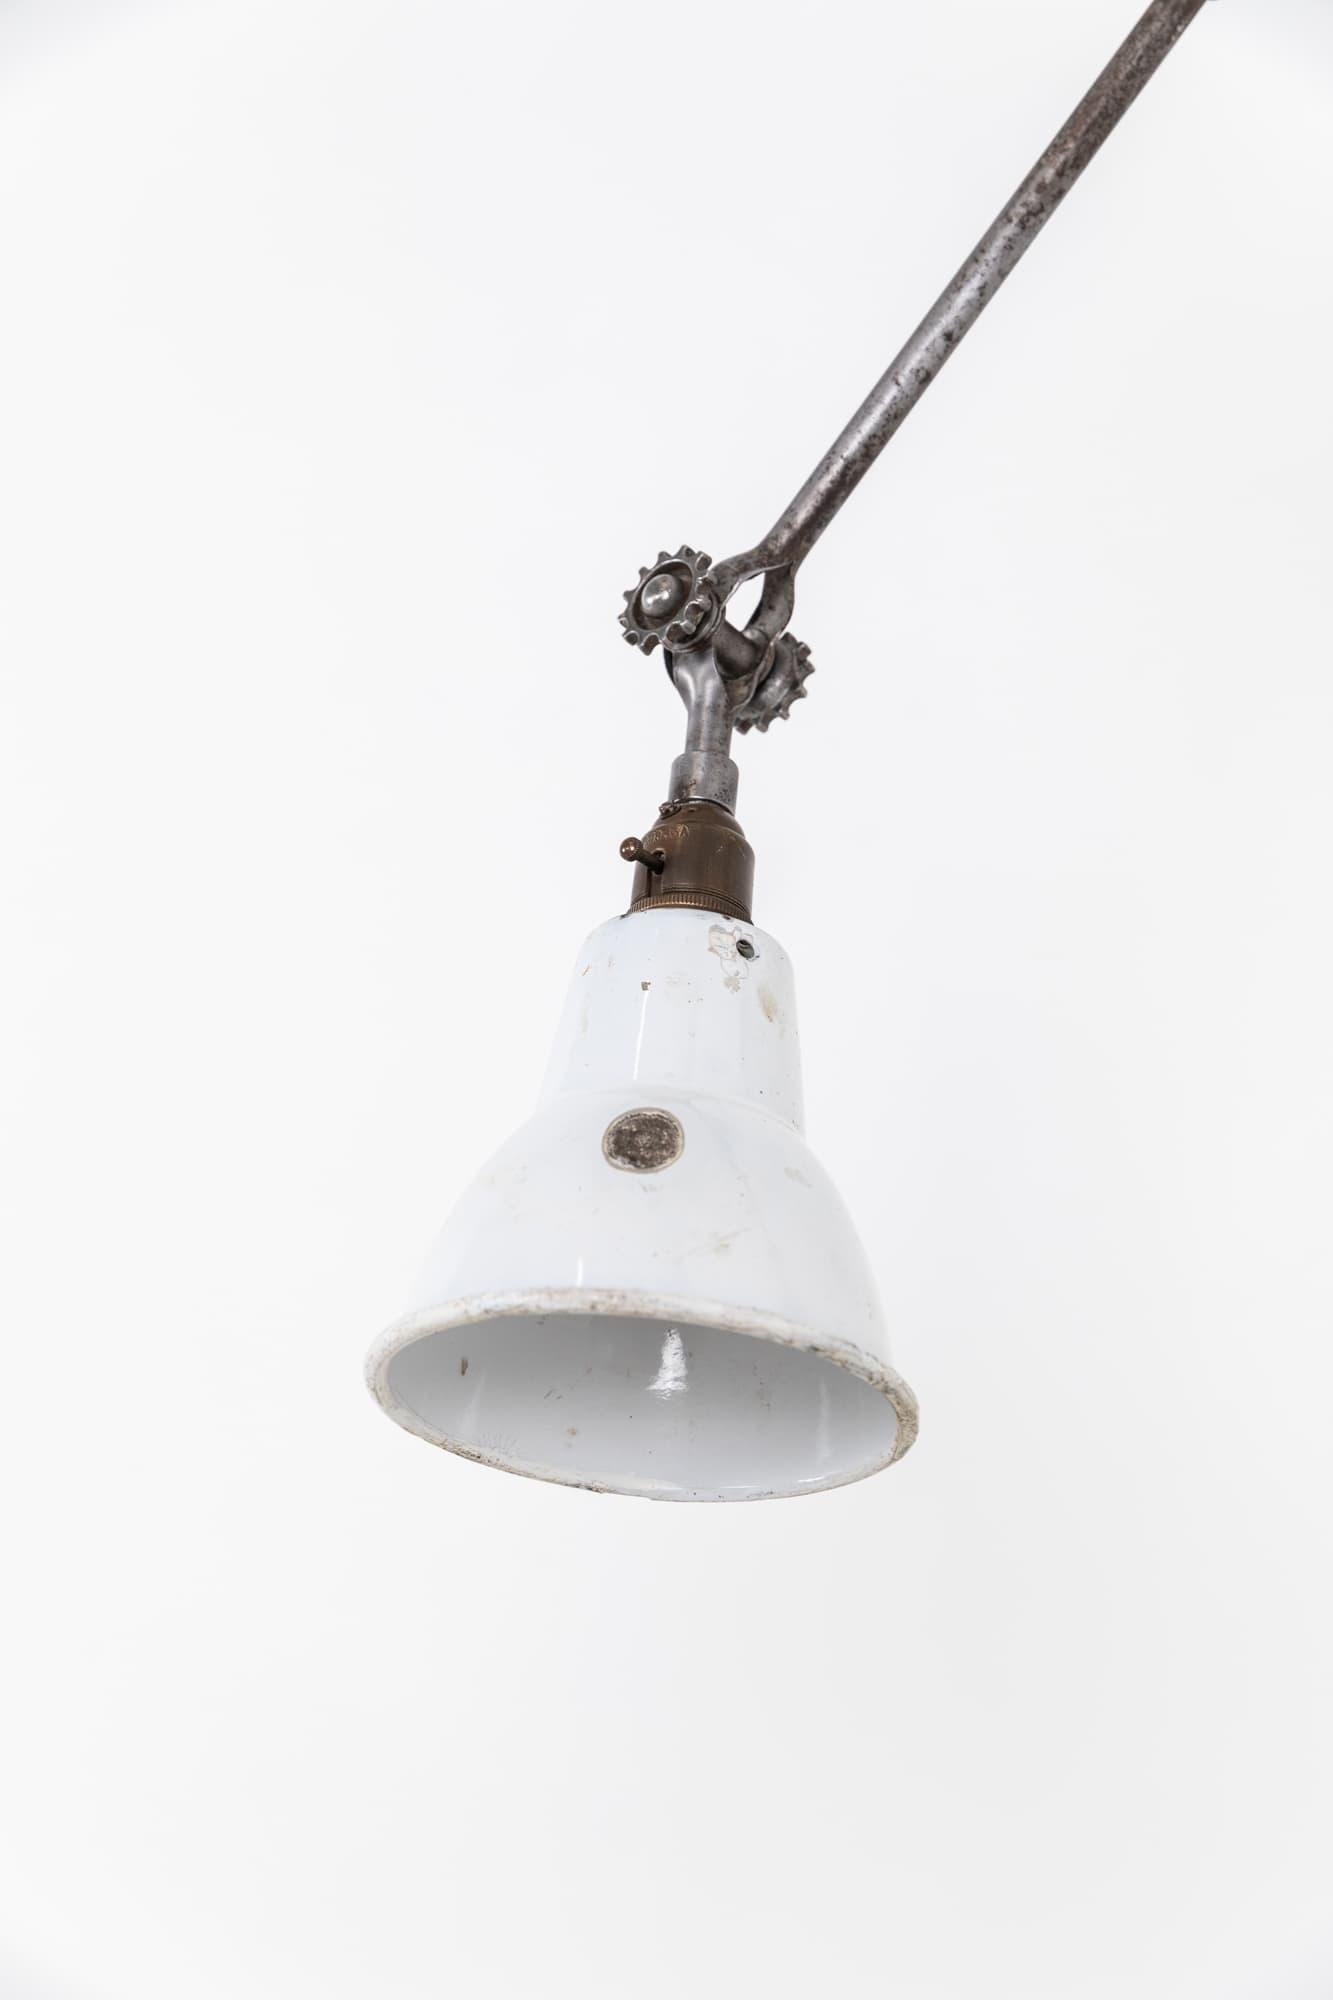 Sehr seltenes Exemplar einer frühen, in England von Dugdills hergestellten Fabriklampe. Um 1910

Gefertigt aus Stahl mit einer sehr schönen patinierten Oberfläche, mit den früheren gezahnten Spannbolzen. Diese vielseitige Leuchte ist vollständig